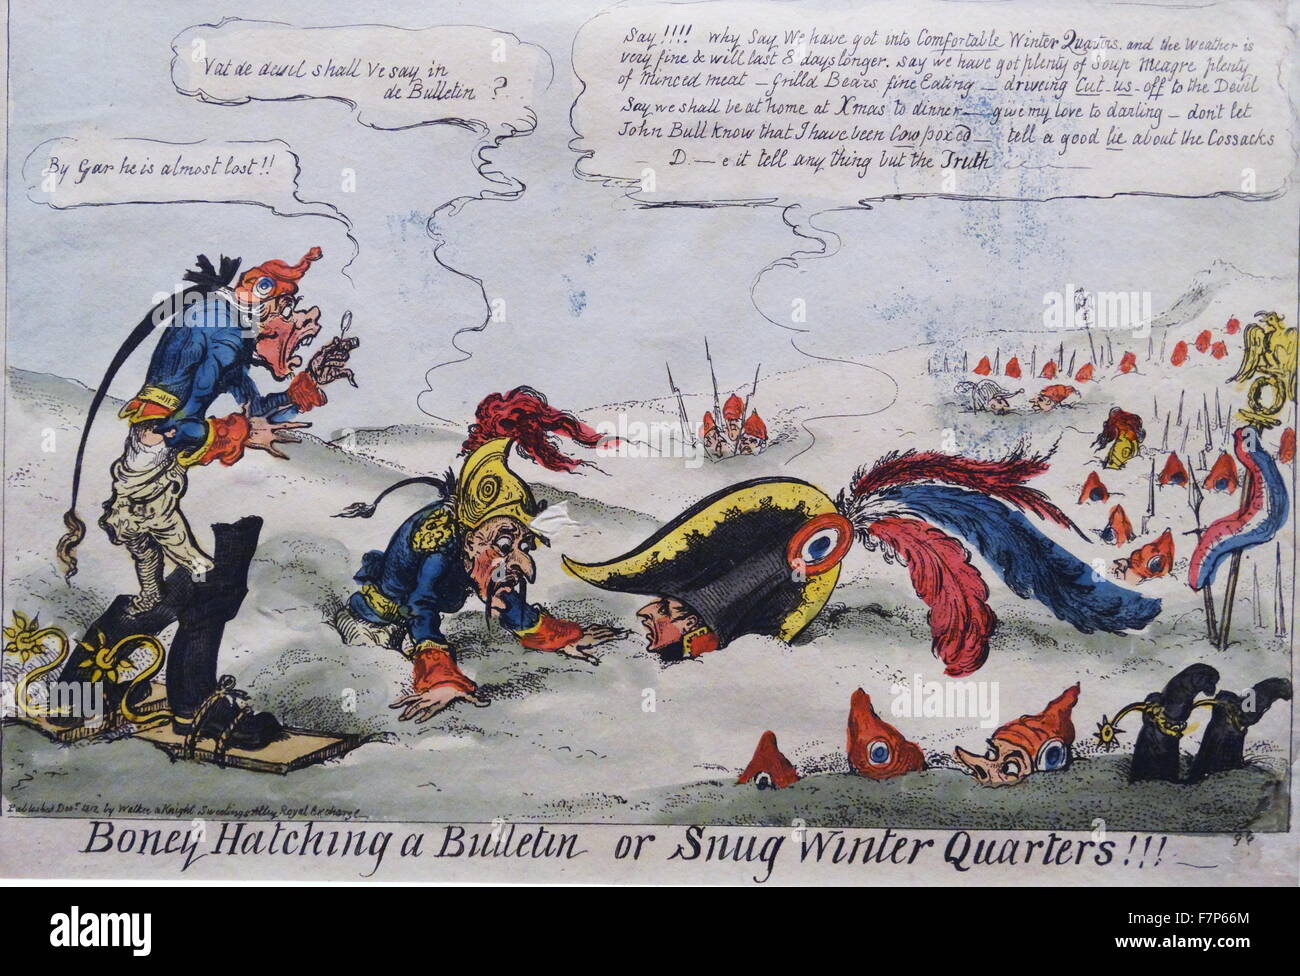 Handkolorierten Radierung mit dem Titel "Boney schlüpfen ein Bulletin oder gemütliche Winterquartier" von George Cruikshank (1792-1878), britischer Karikaturist und Buchillustrator. Datiert 1812 Stockfoto